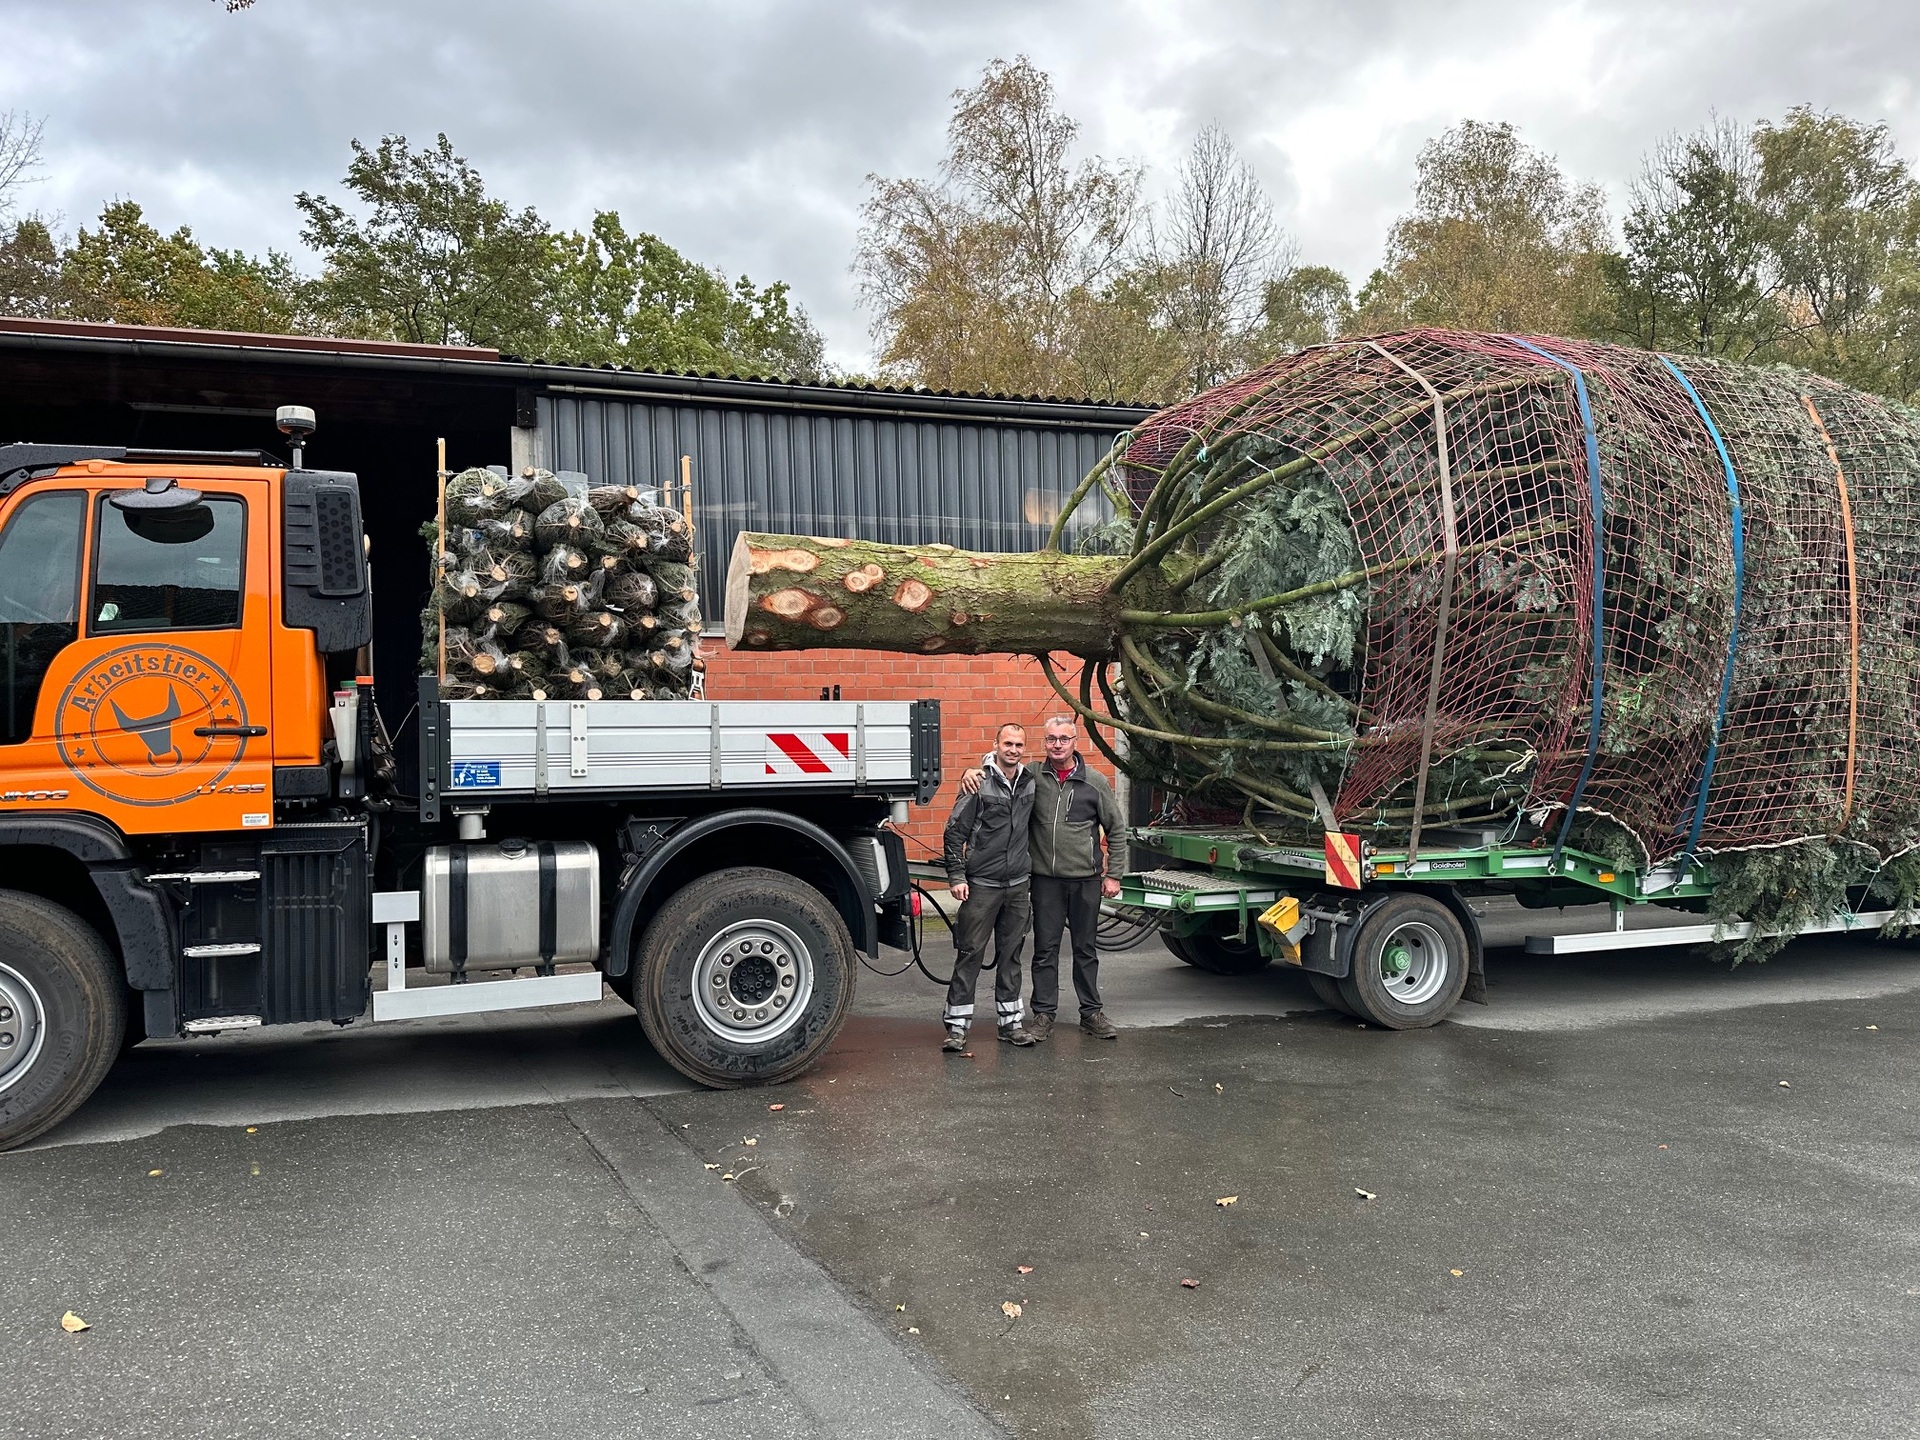 Festlicher Transport: Unimog bringt Weihnachtsbaum von Paderborn nach Berlin